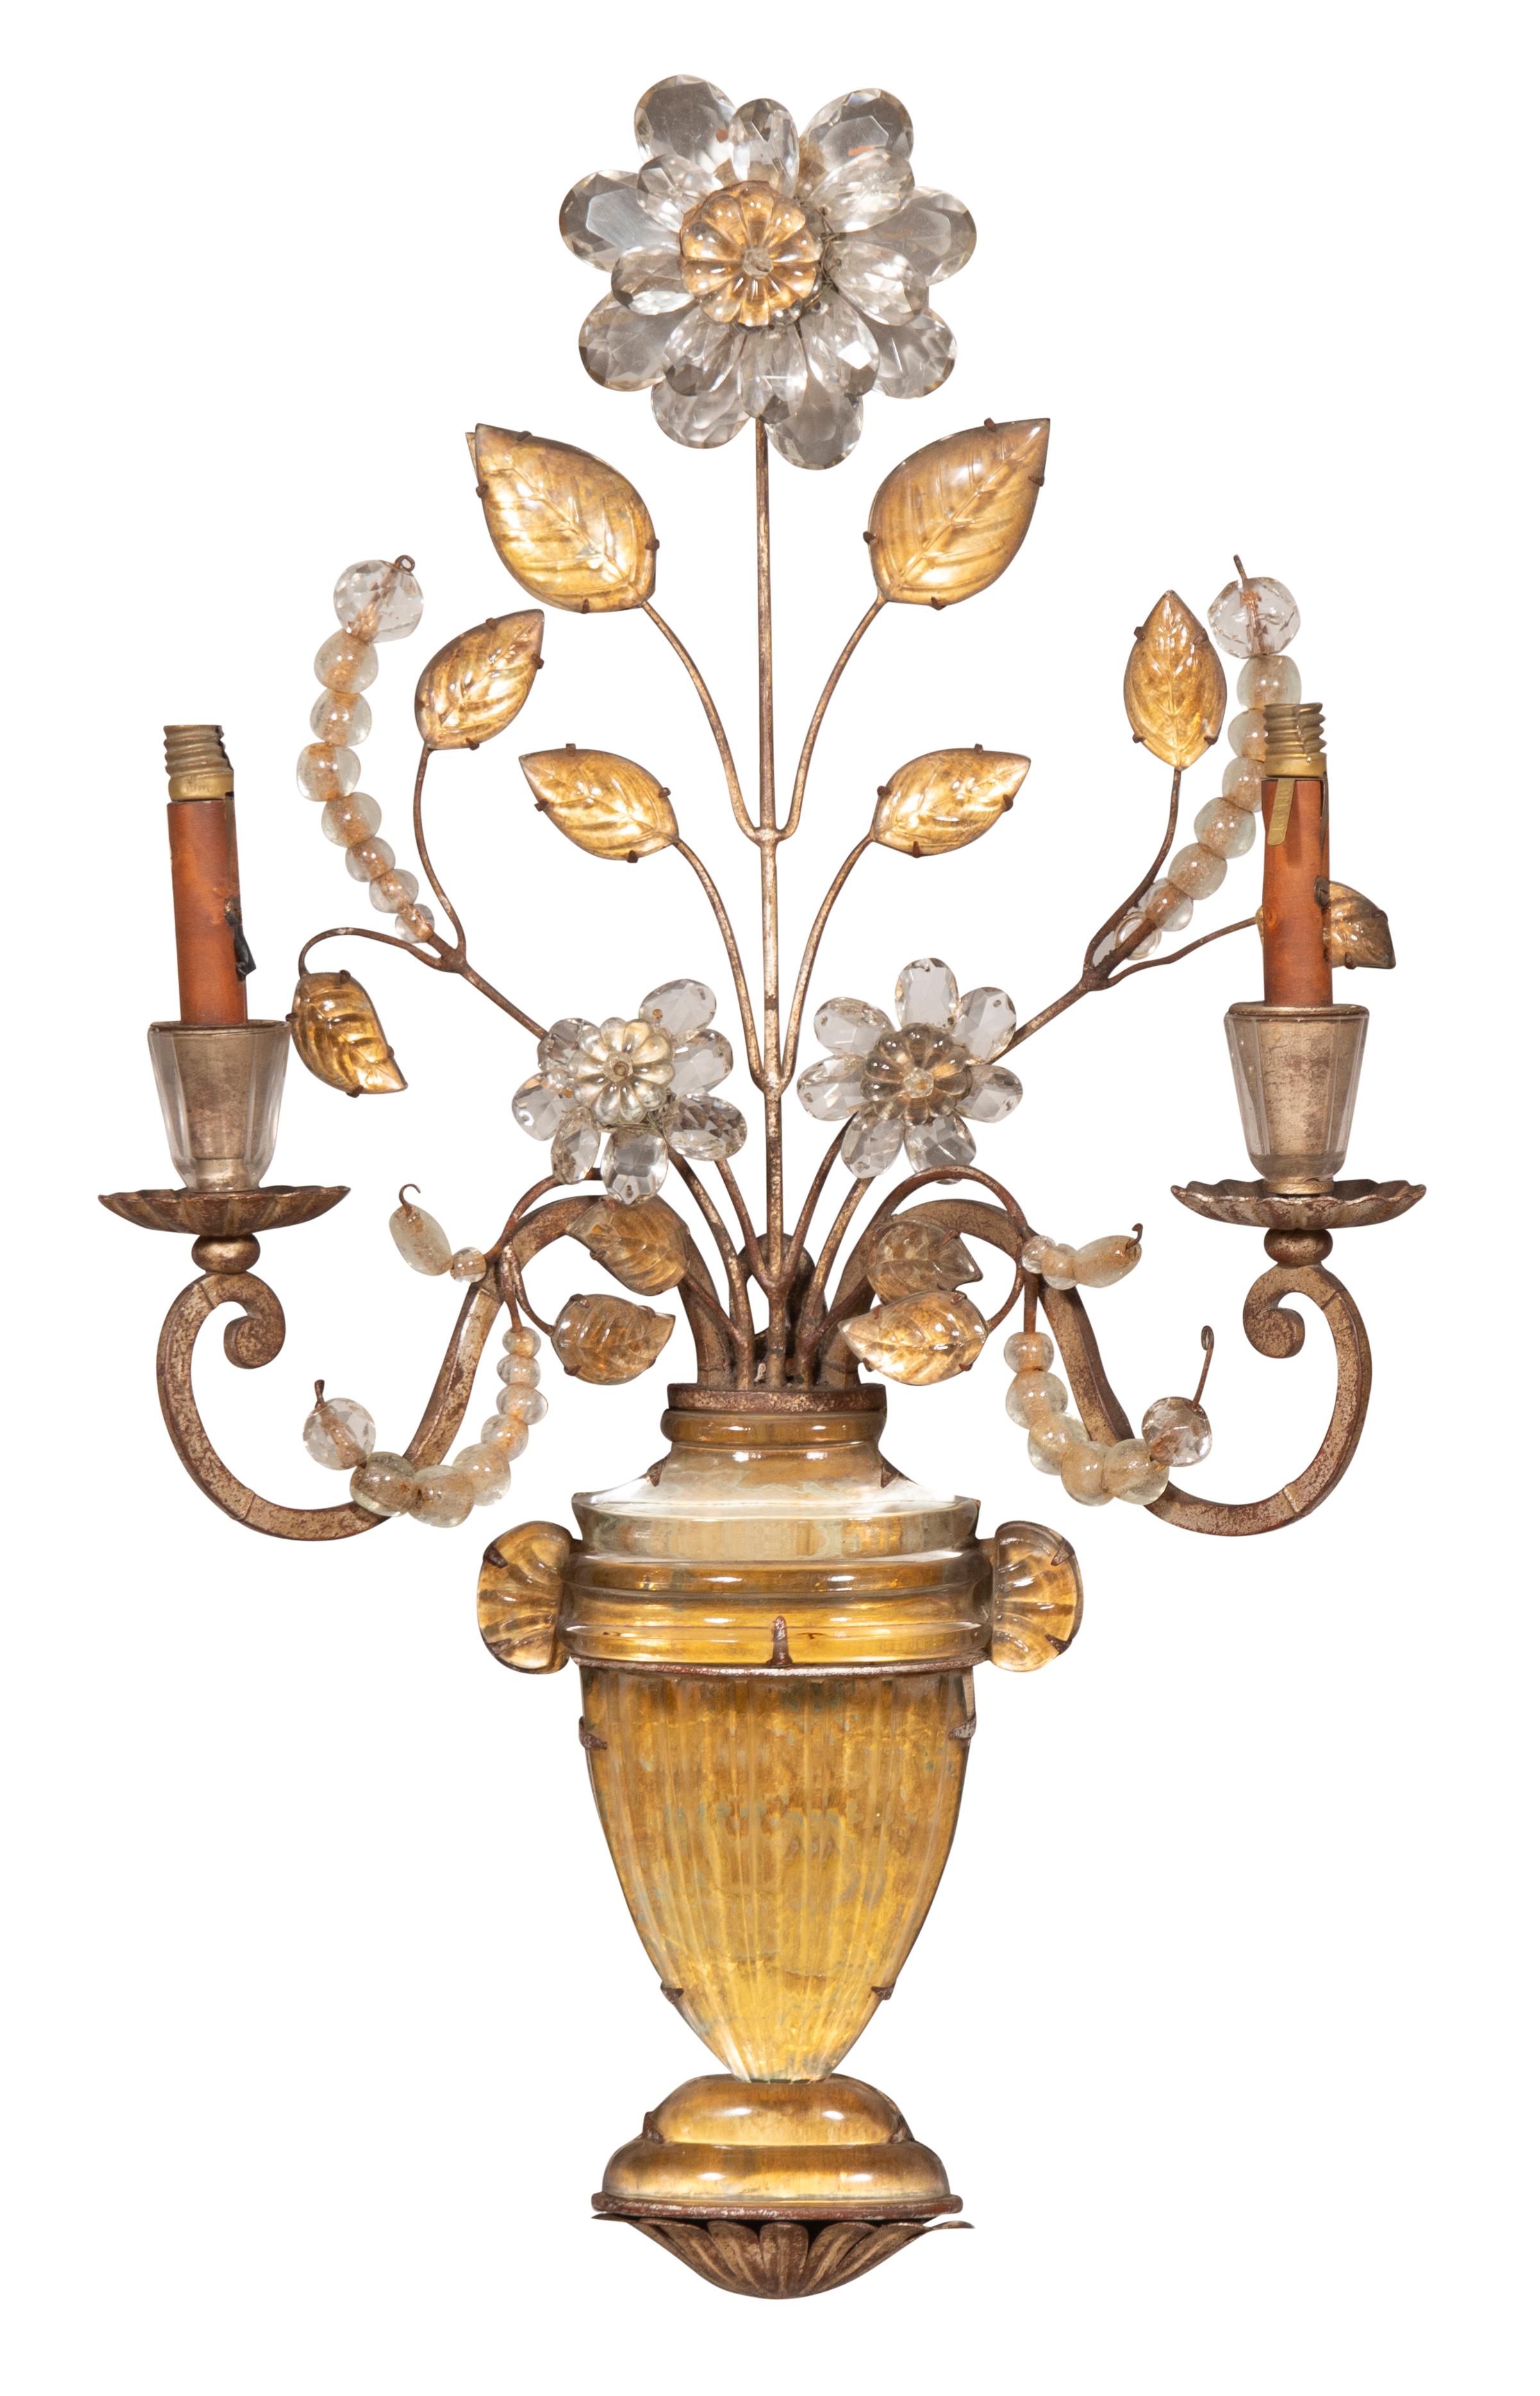 Wunderschöne elegante Wandleuchter mit goldenen und klaren Glastönen. Zwei Arme mit zentraler Blume und Blättern, die aus klassischen Urnen fließen. Derzeit wird eine Verkabelung benötigt.